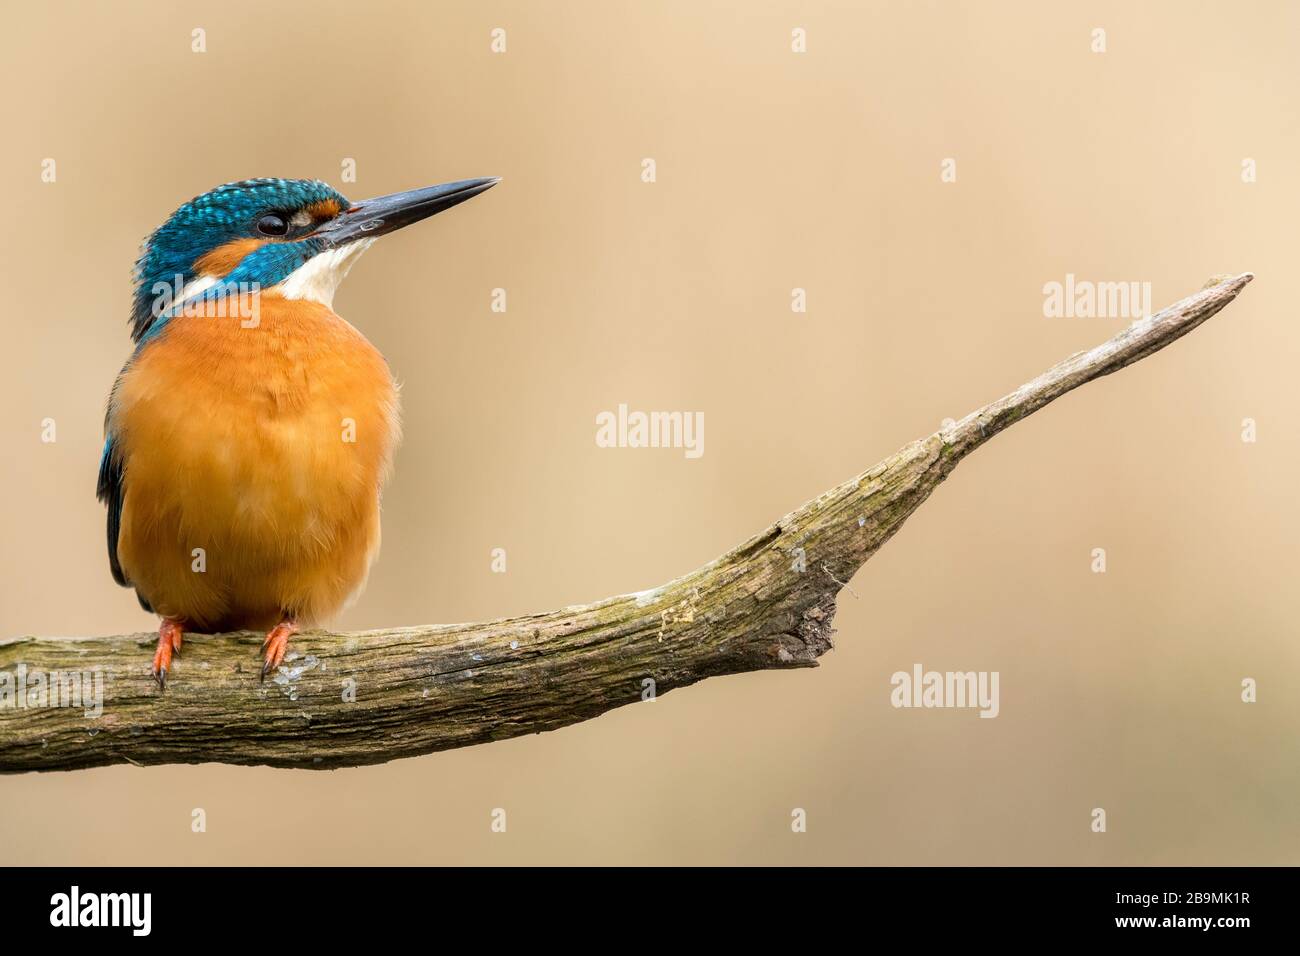 Männliches Königsfisher, das auf einem Ast vor einem ruhigen, gleichmäßigen Hintergrund eines entfernten Schilfbetts ruht Stockfoto